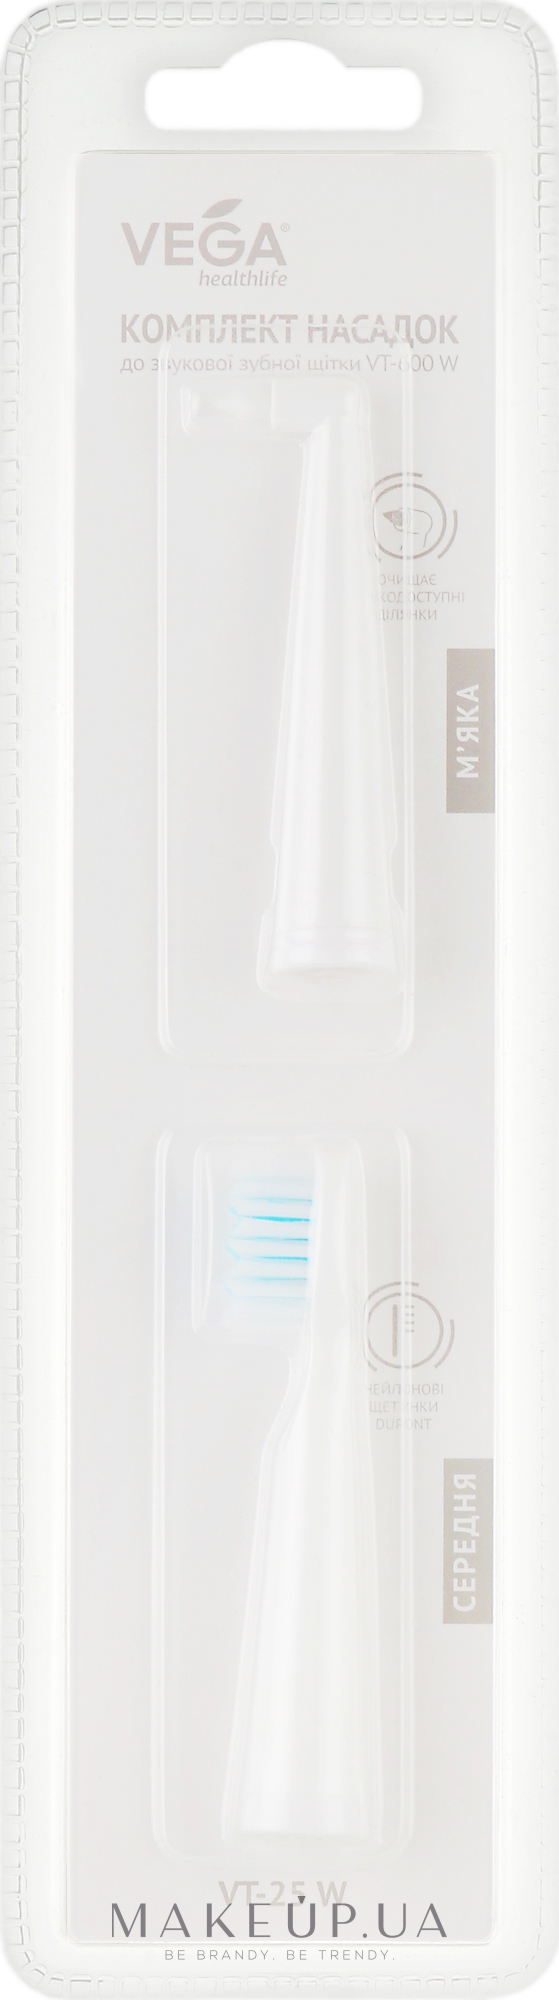 Змінна насадка для електричної зубної щітки, VT-600W, біла  - Vega — фото 2шт